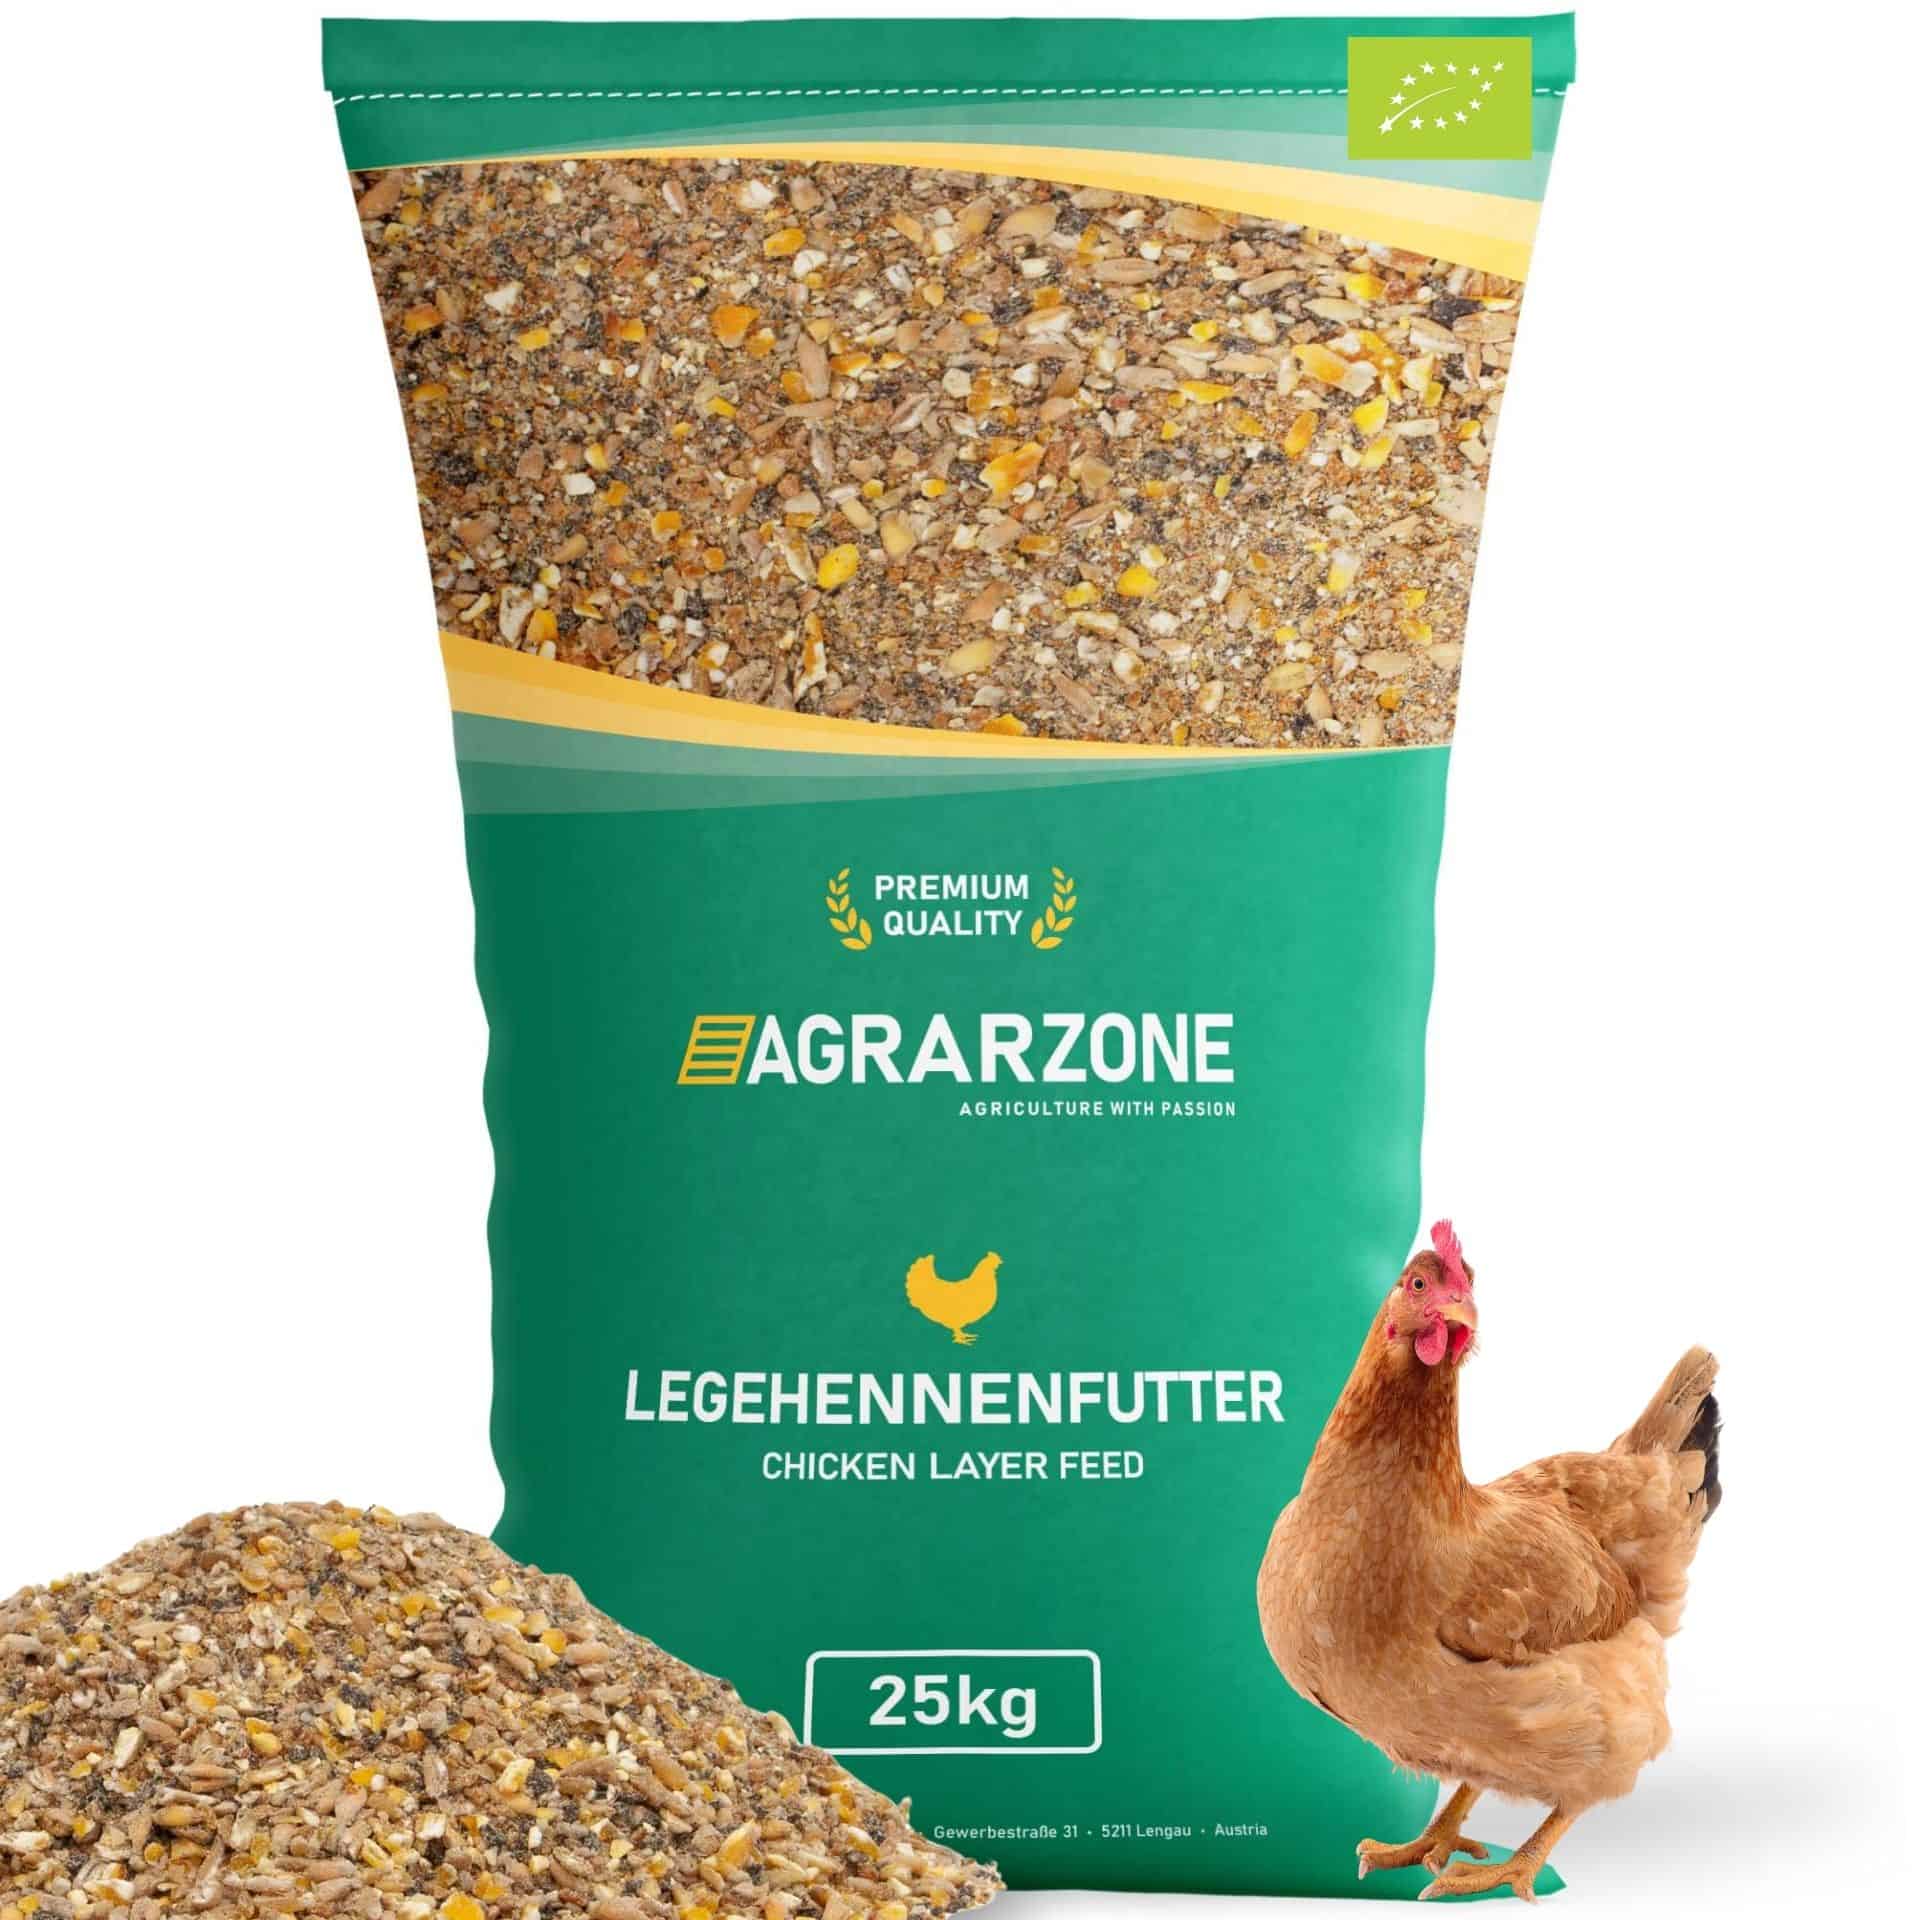 Agrarzone ekologiskt foder för värphöns, mjöl för värphöns 25 kg